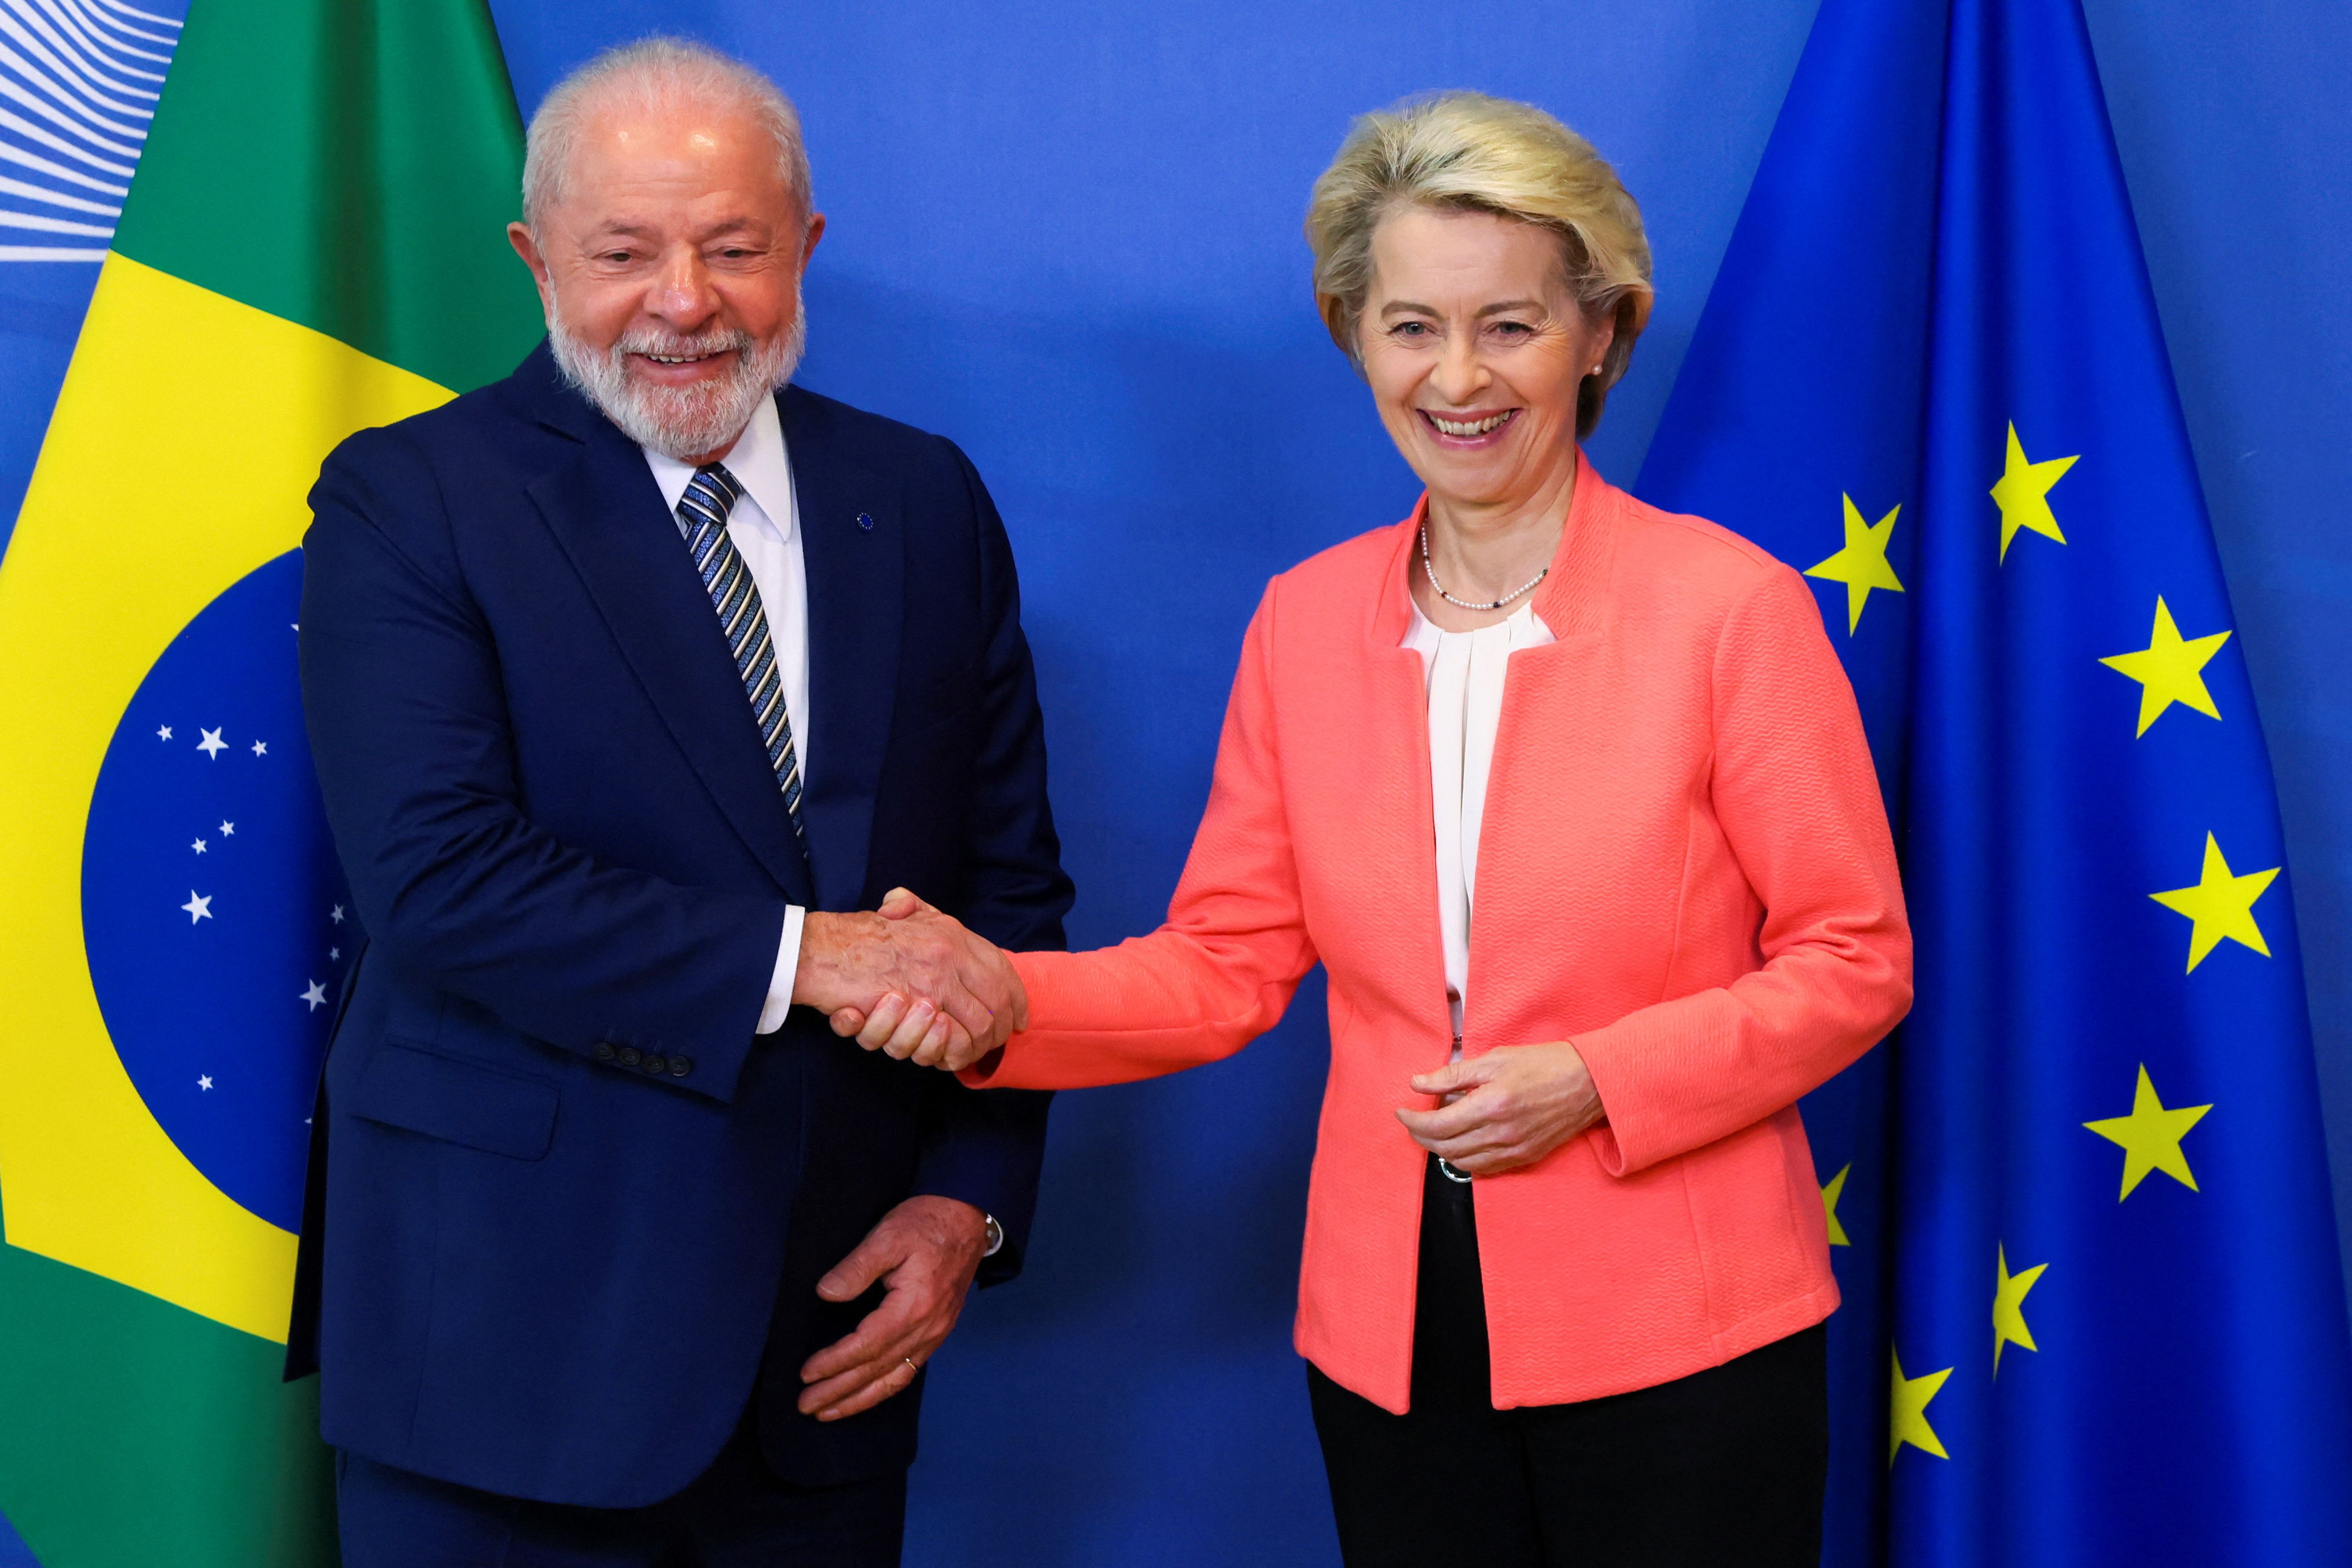 El presidente de Brasil, Luiz Inacio Lula da Silva, junto a la presidenta de la Comisión Europea, Ursula von der Leyen, en la previa a la cumbre de líderes que se realizará en Bruselas. (FOTO: REUTERS/Yves Herman)